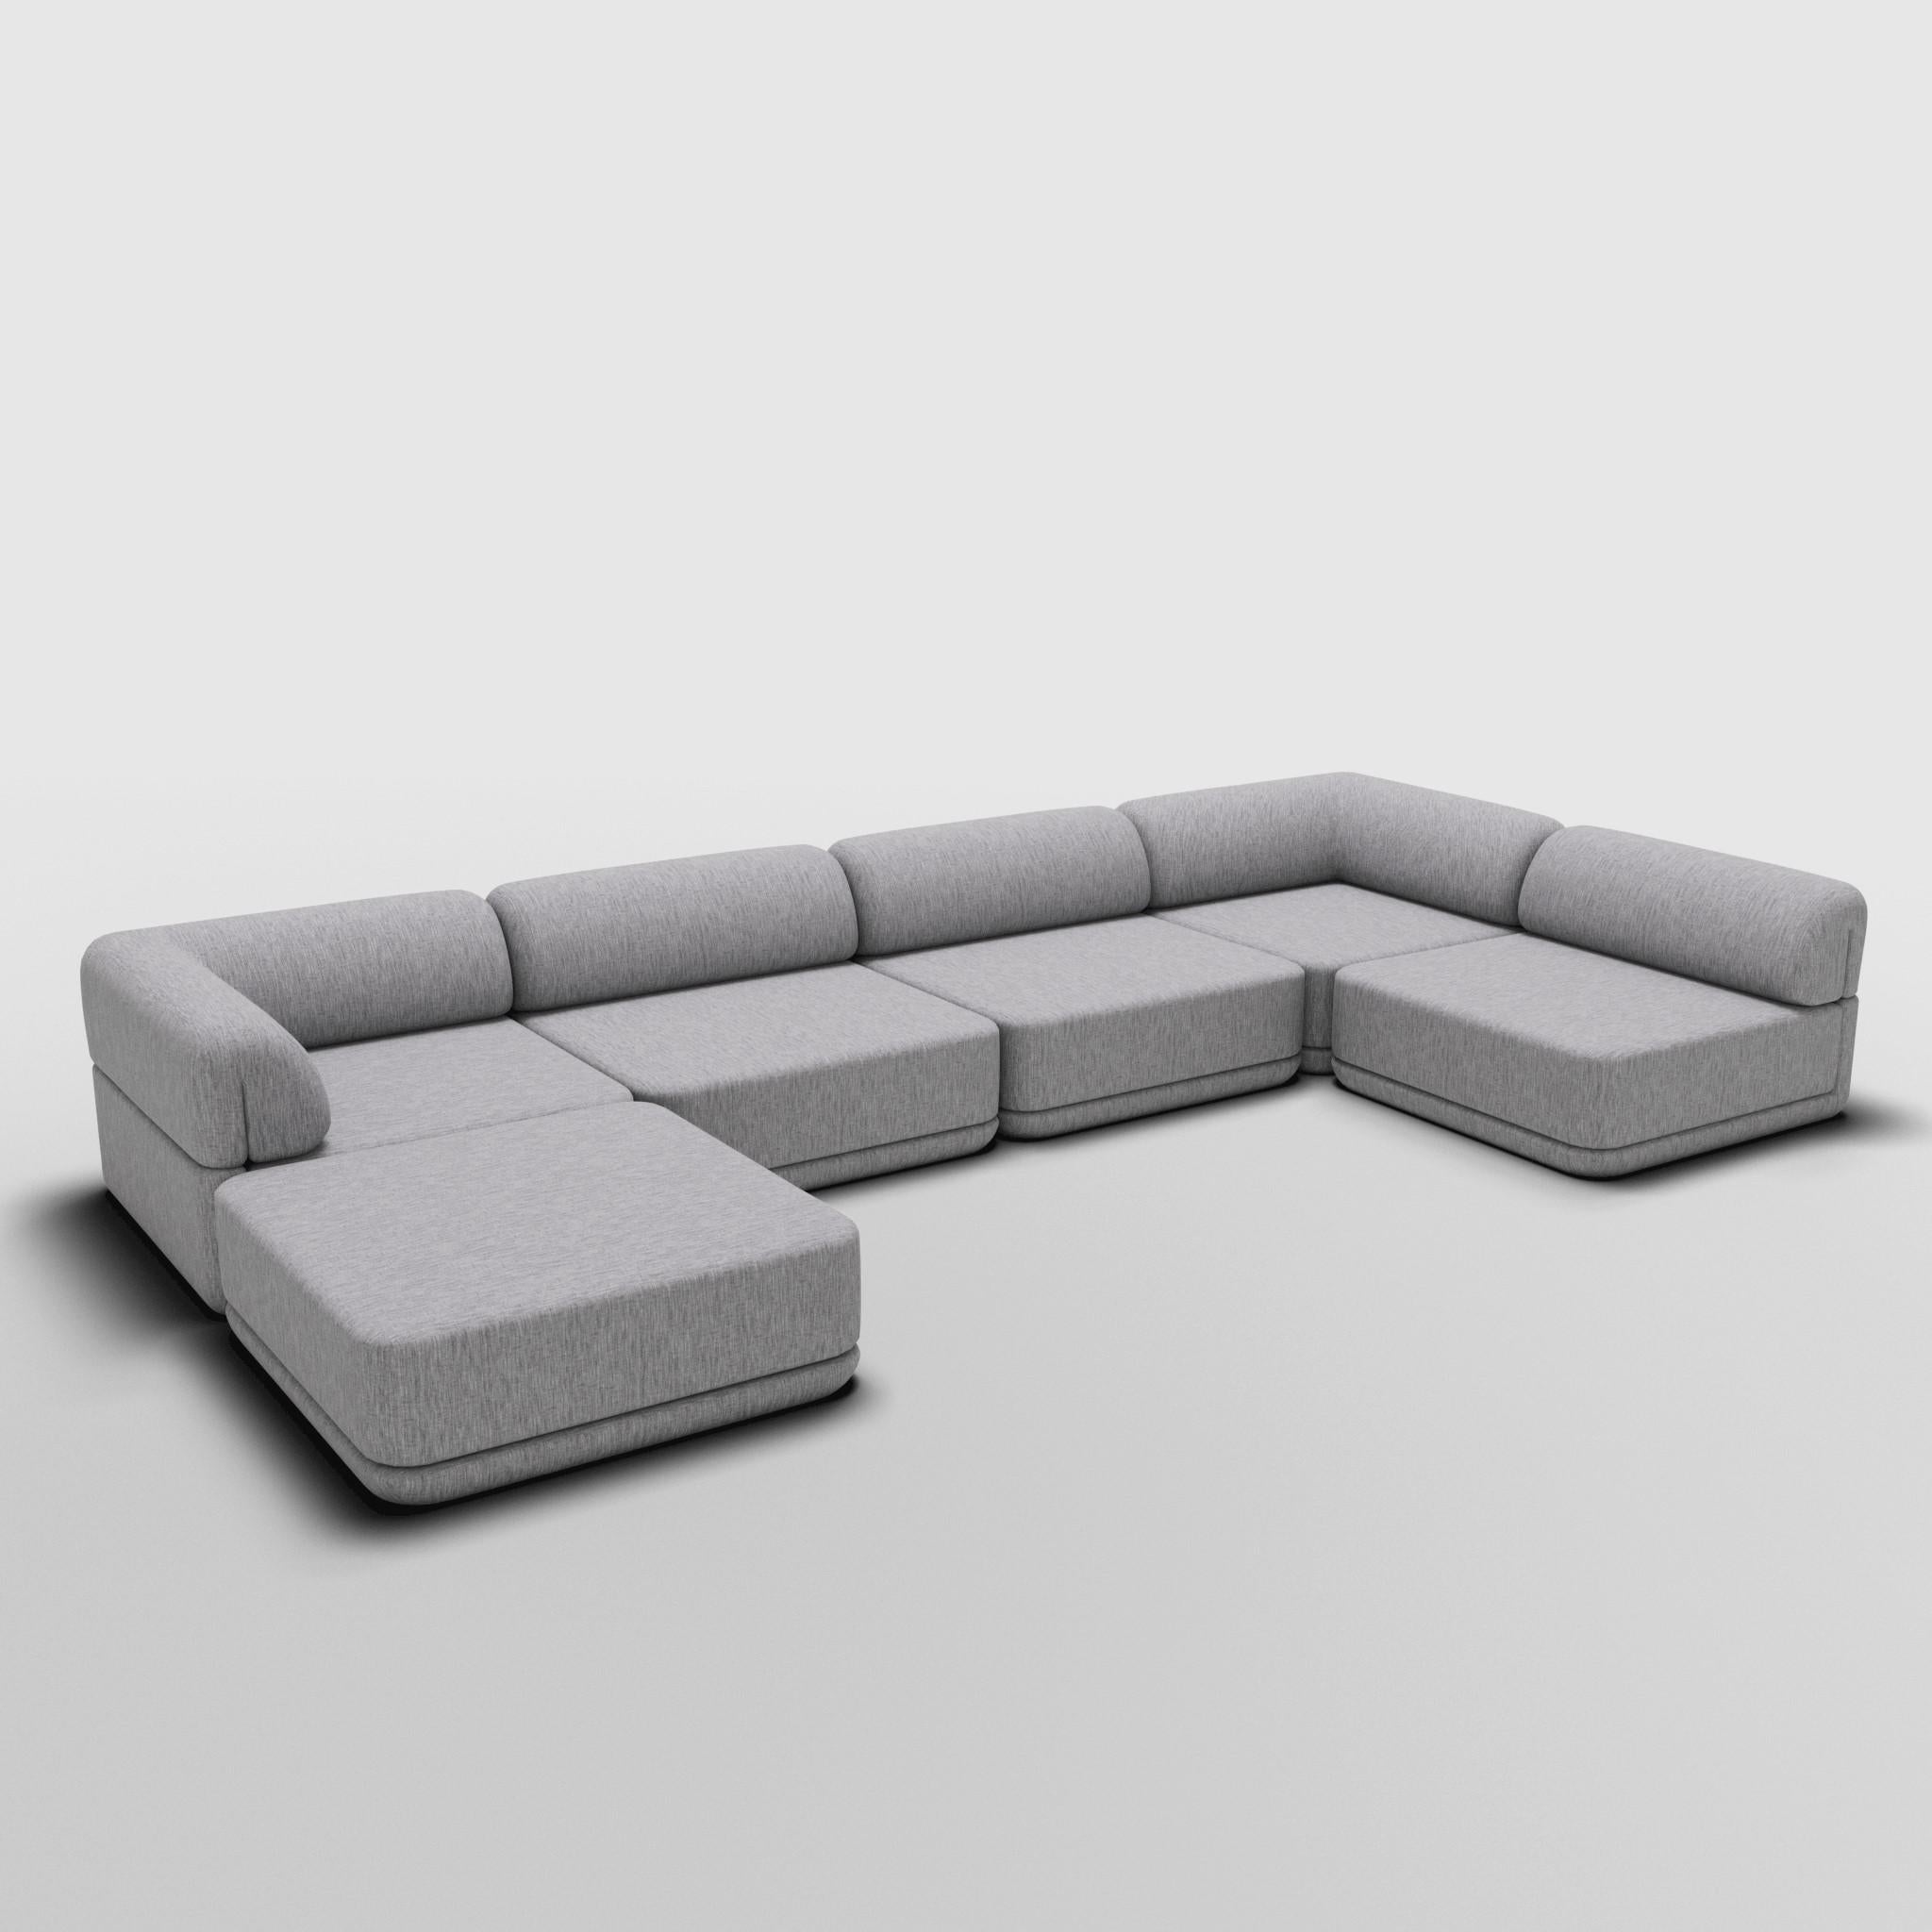 Low Lounge Sectional - Inspiré par les meubles de luxe italiens des années 70

Découvrez le canapé Cube, où l'art rencontre l'adaptabilité. Son design sculptural et son confort personnalisable créent des possibilités infinies pour votre espace de